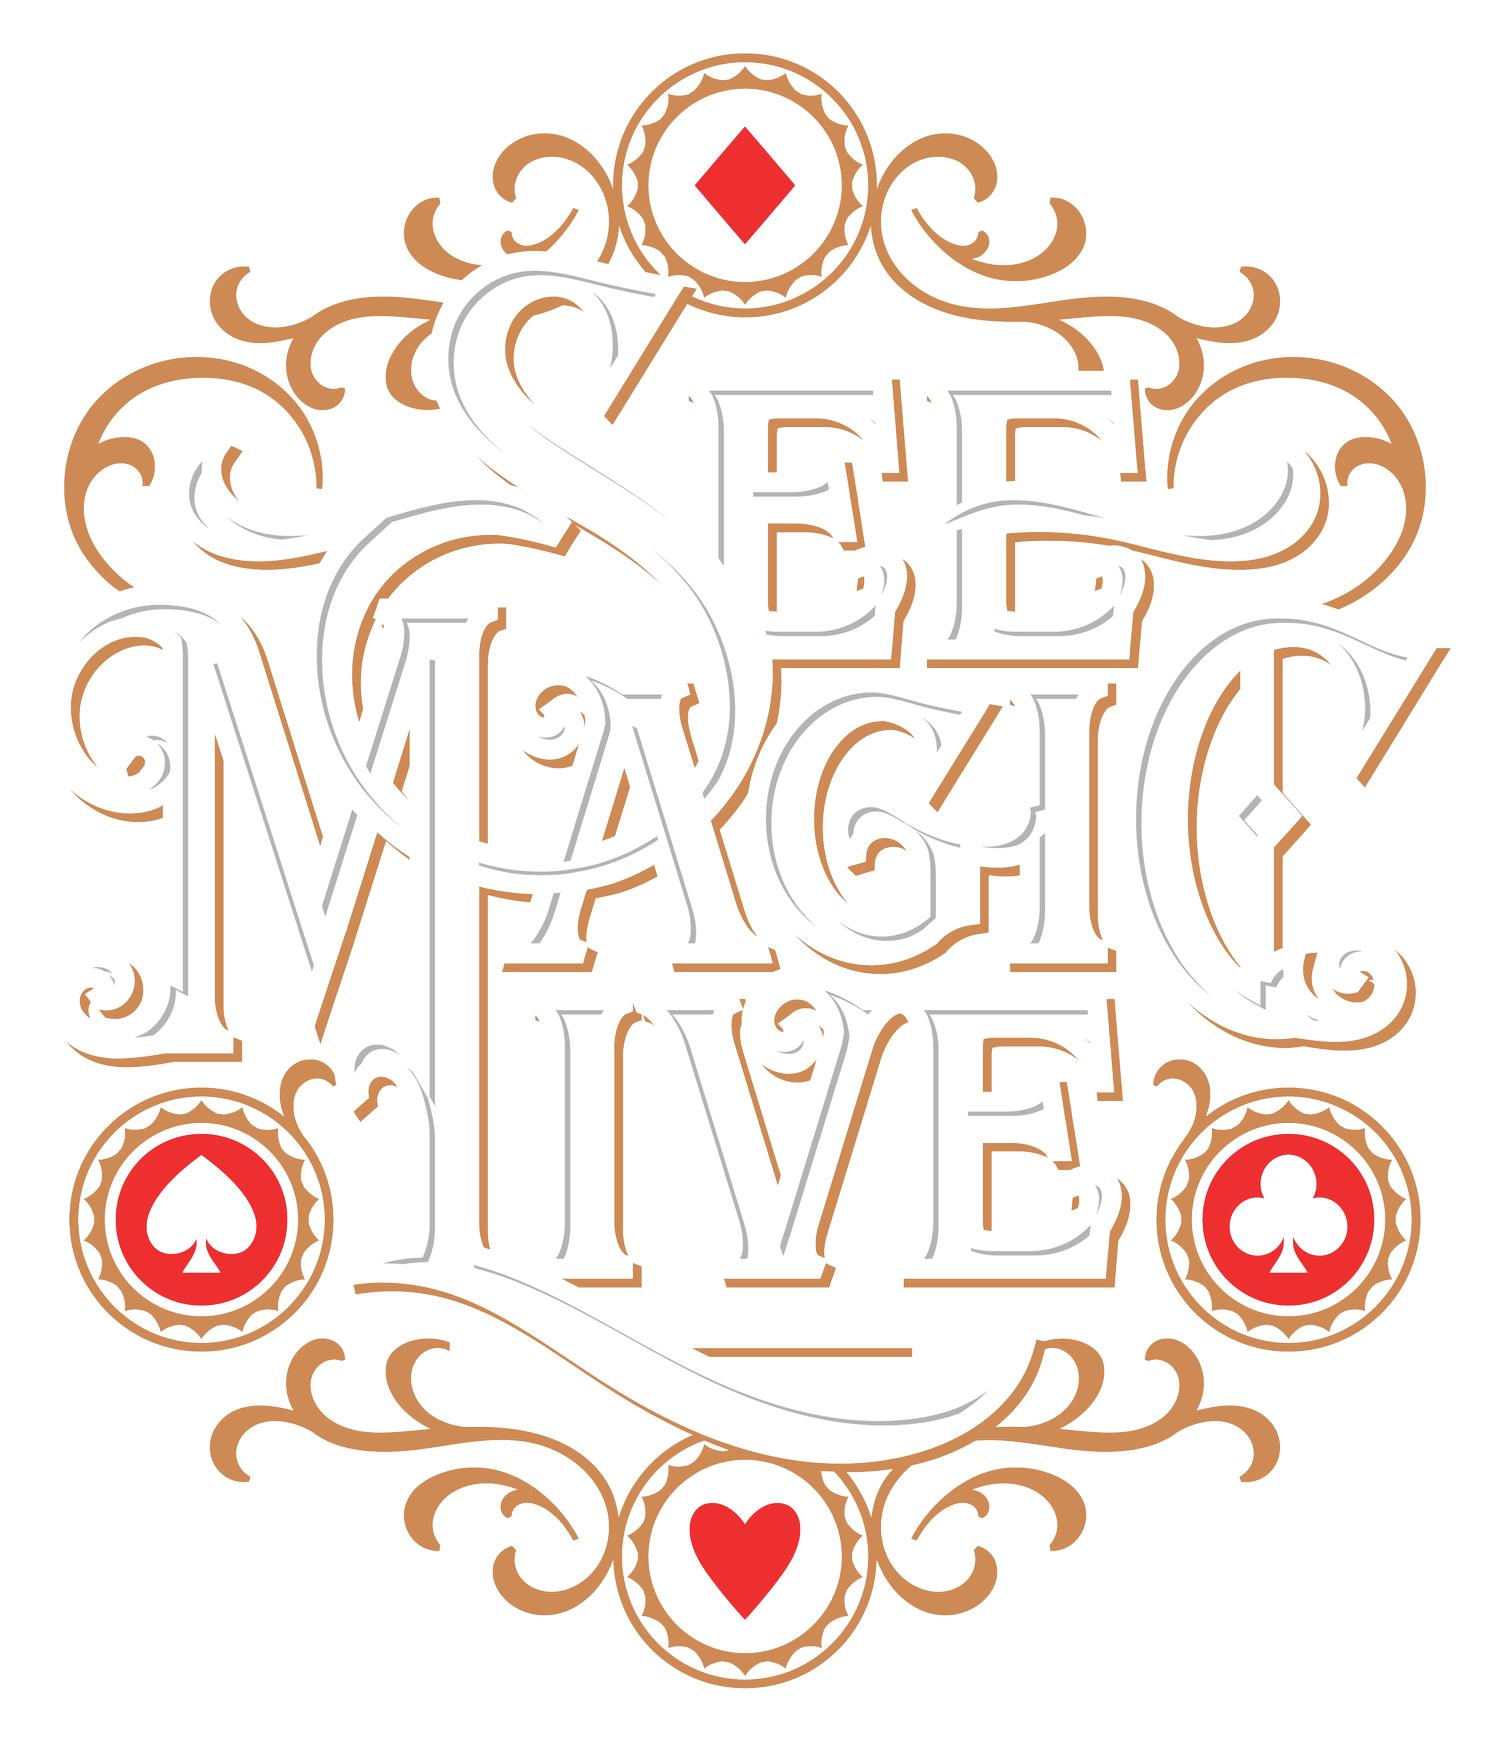 See Magic Live